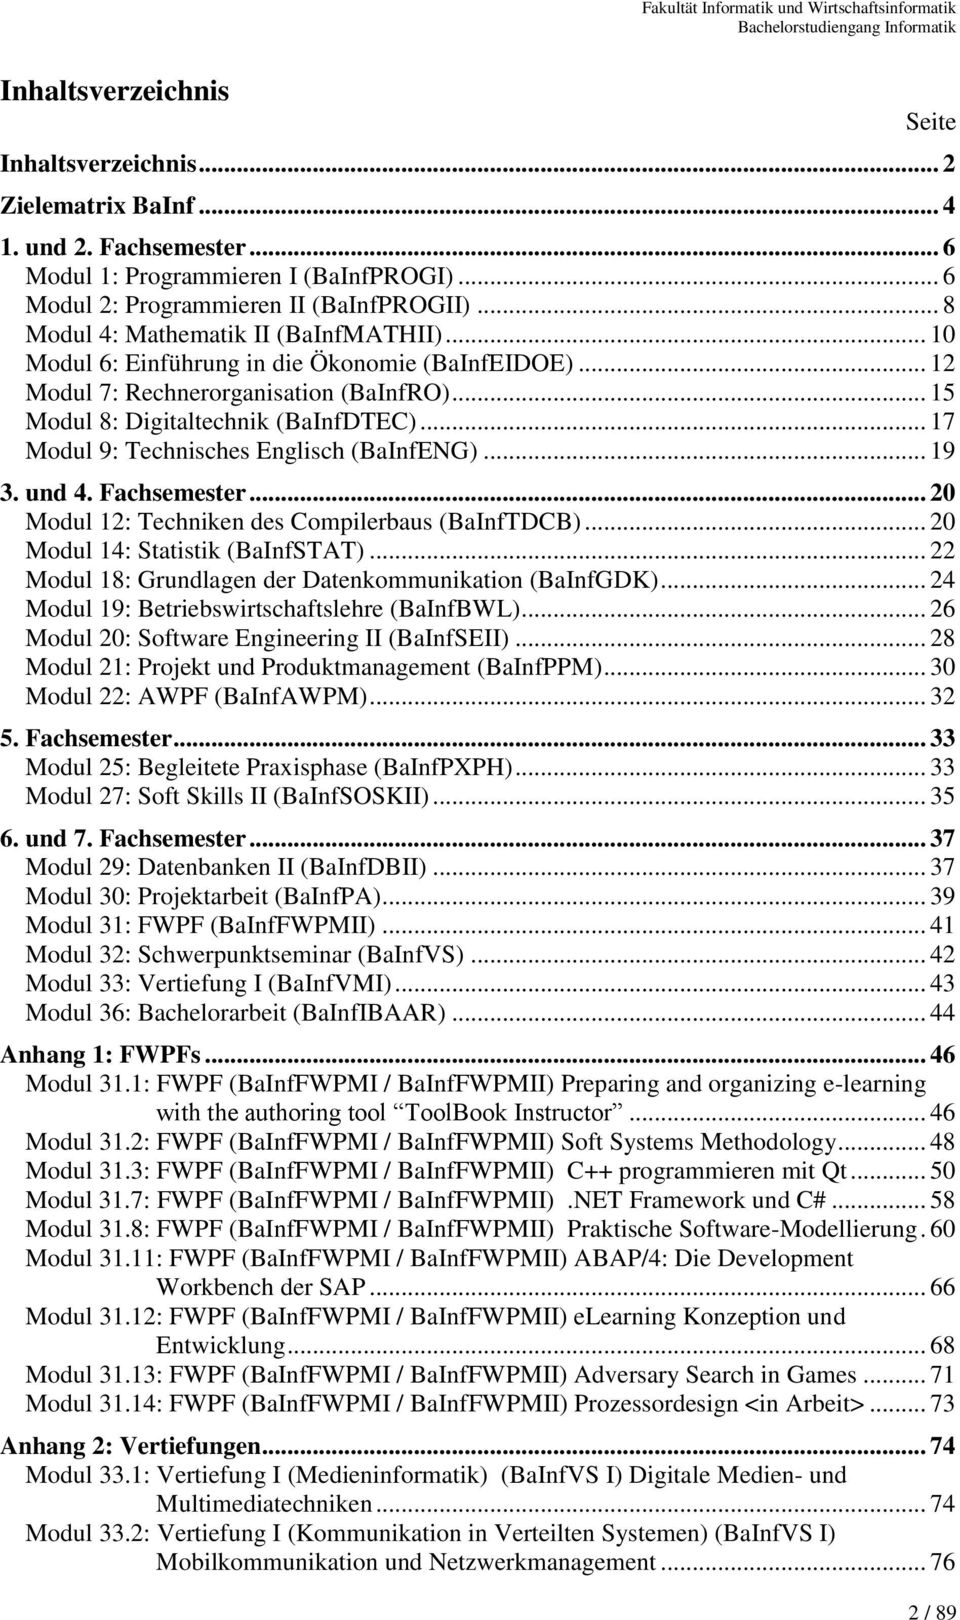 .. 17 Modul 9: Technisches Englisch (BaInfENG)... 19 3. und 4. Fachsemester... 20 Modul 12: Techniken des Compilerbaus (BaInfTDCB)... 20 Modul 14: Statistik (BaInfSTAT).